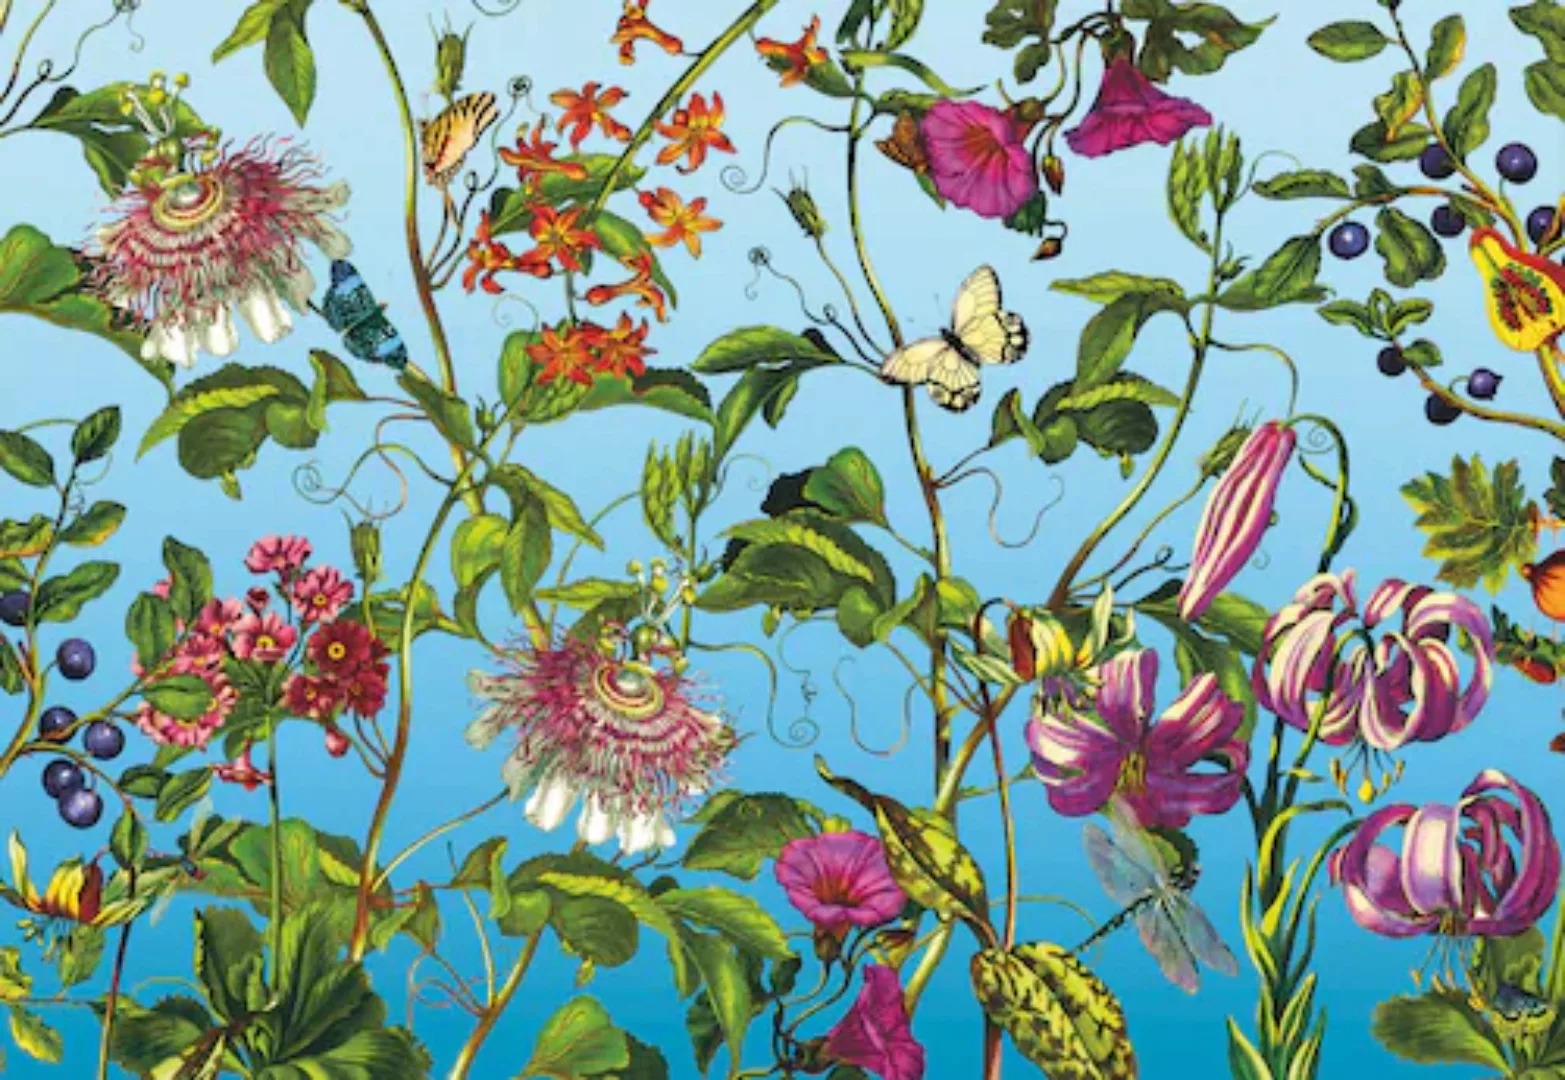 KOMAR Vlies Fototapete - Jardin - Größe 368 x 248 cm mehrfarbig günstig online kaufen